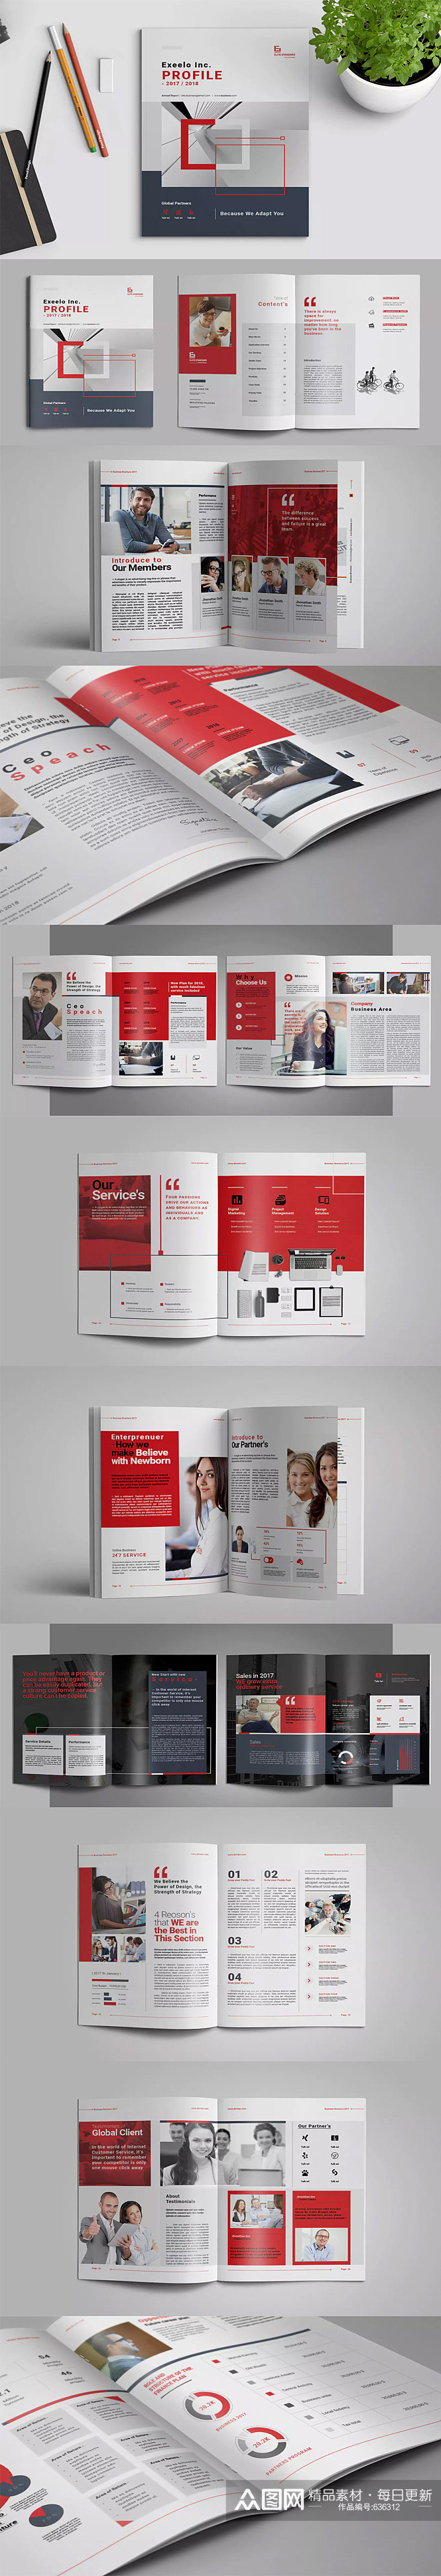 红色大气简约画册设计 书籍目录设计素材